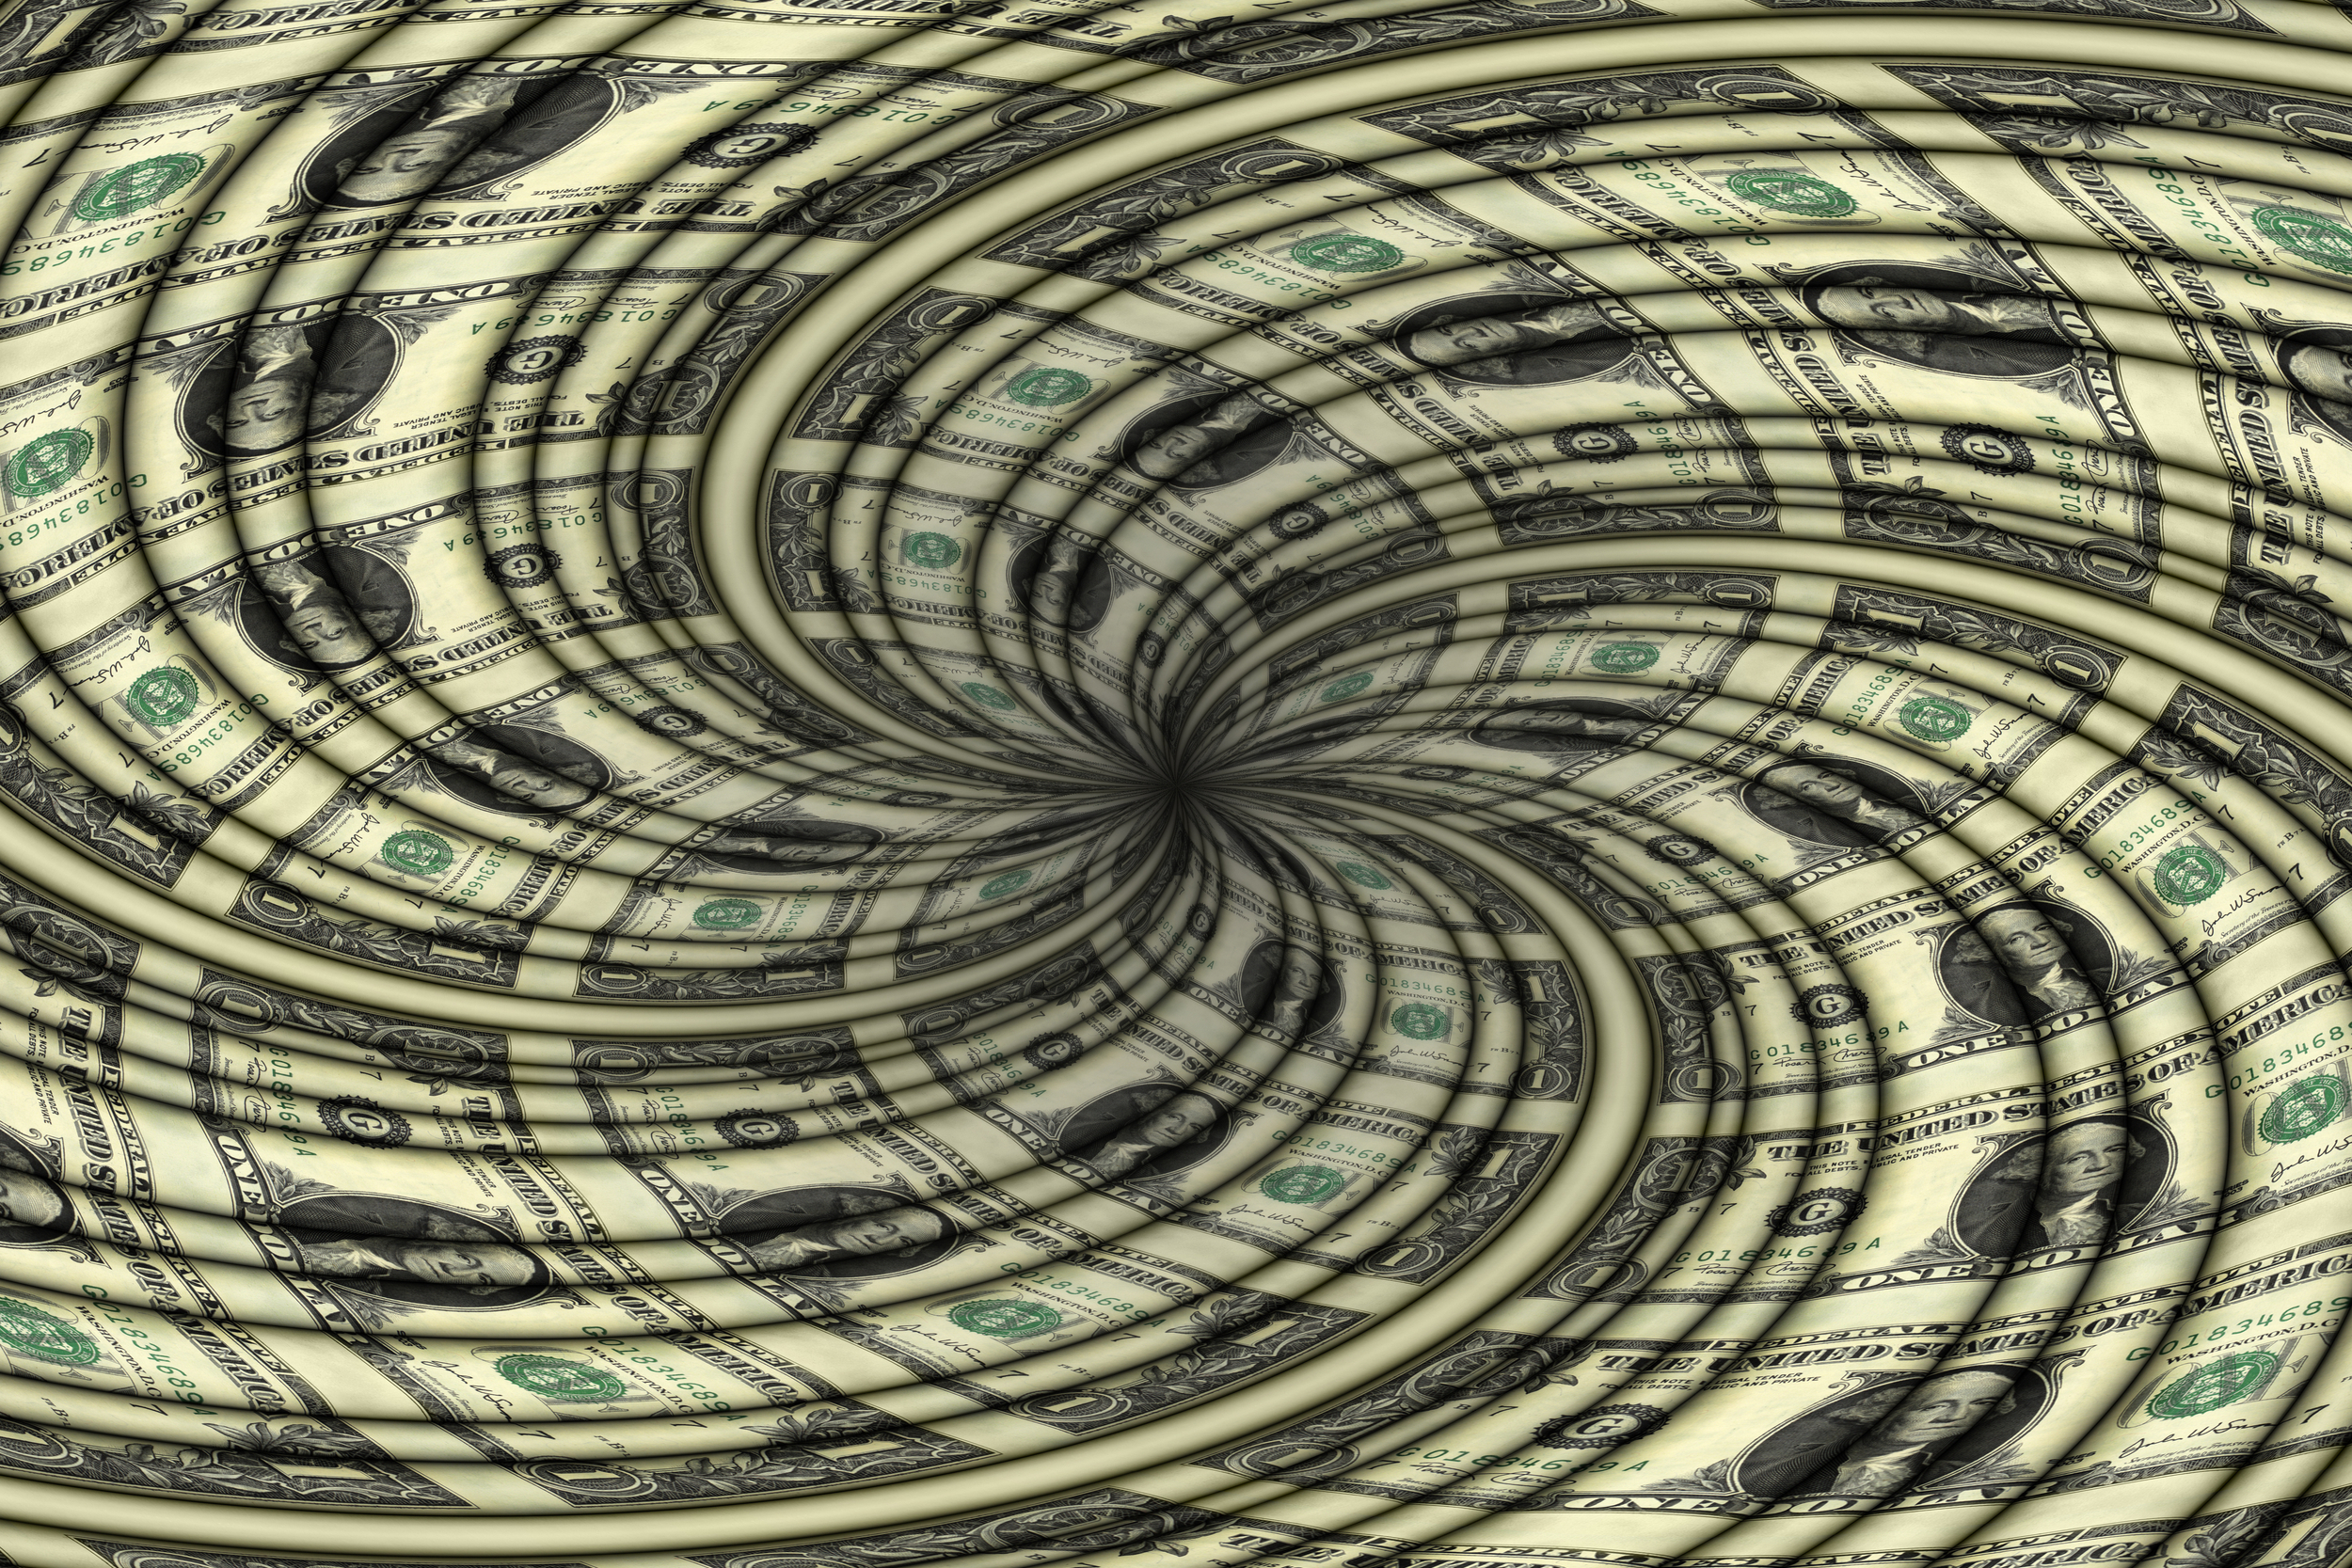 Spirala płacowo-cenowa - zdjęcie ilustracyjne. Fot. Shutterstock